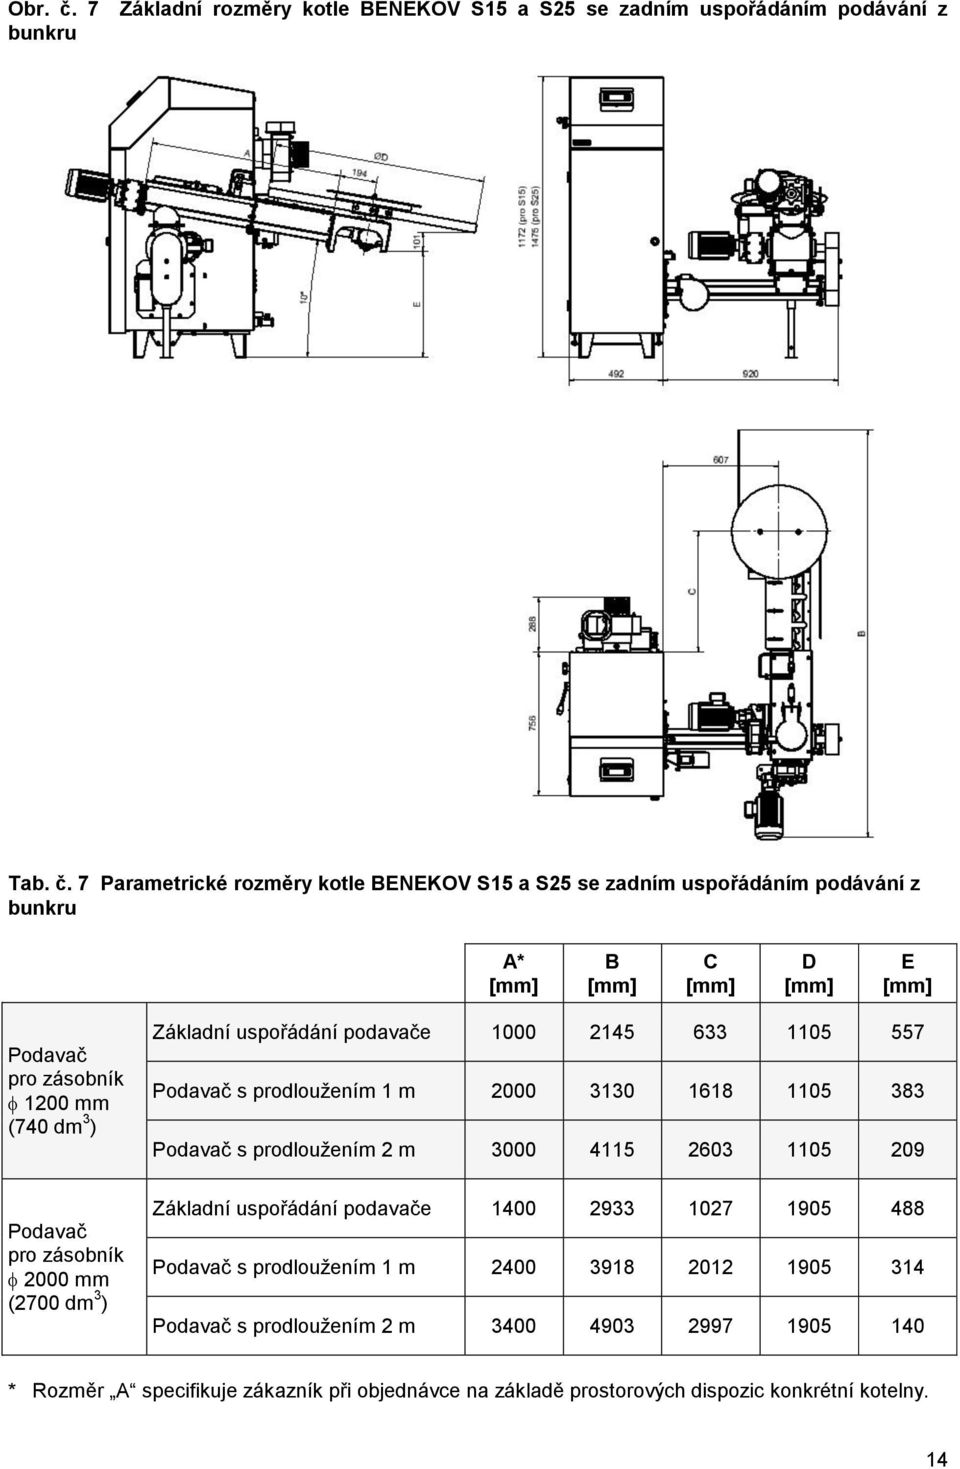 7 Parametrické rozměry kotle BENEKOV S15 a S25 se zadním uspořádáním podávání z bunkru A* B C D E Podavač pro zásobník 1200 mm (740 dm 3 ) Základní uspořádání podavače 1000